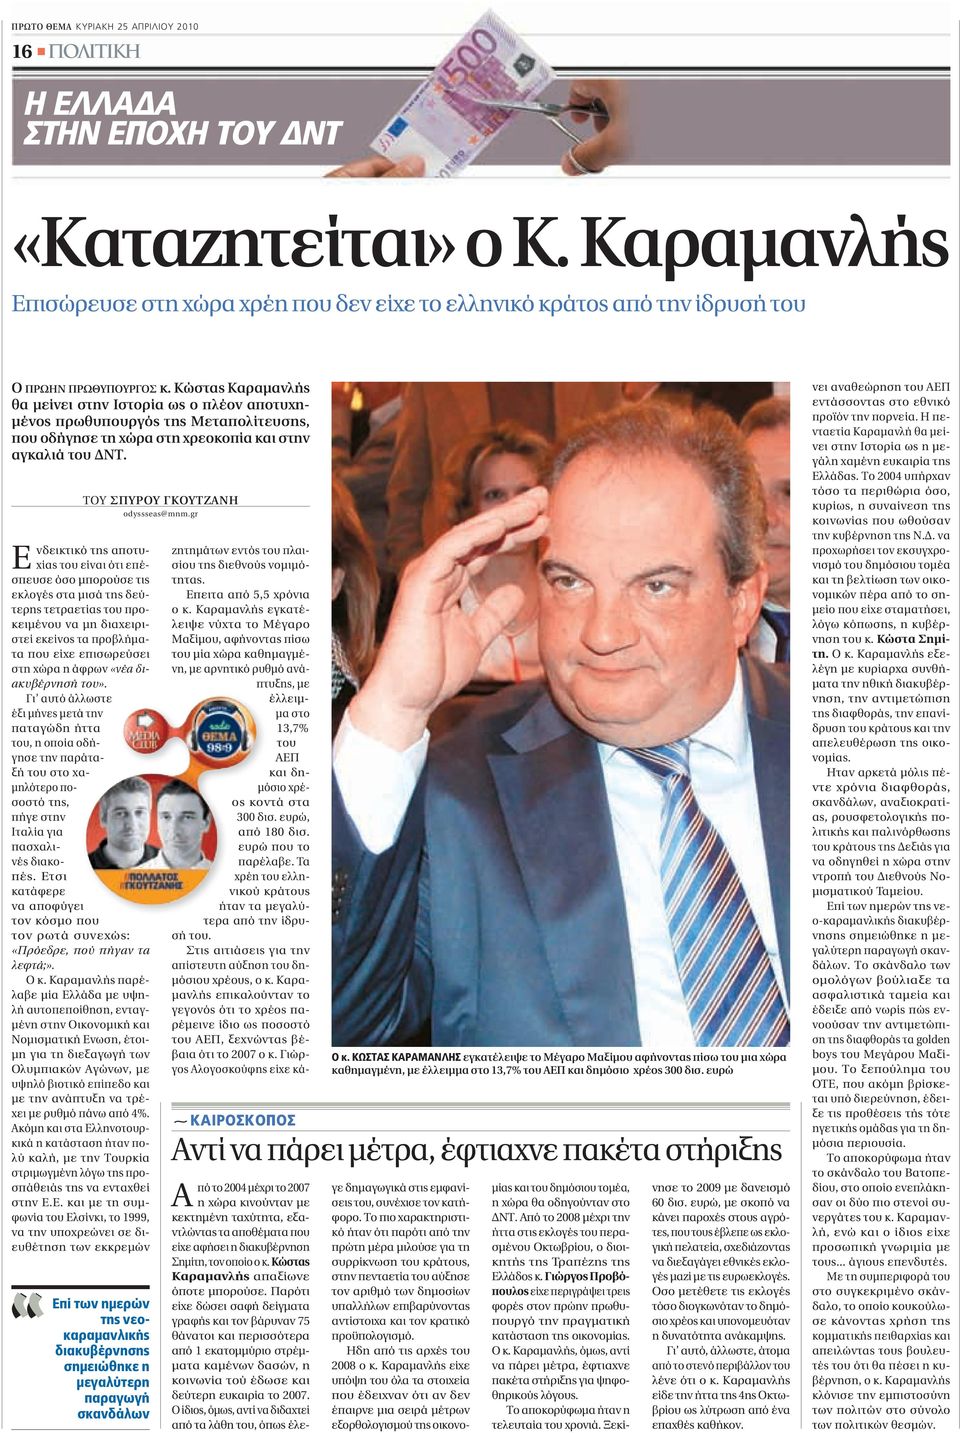 Κώστας Καραμανλής θα μείνει στην Ιστορία ως ο πλέον αποτυχημένος πρωθυπουργός της Μεταπολίτευσης, που οδήγησε τη χώρα στη χρεοκοπία και στην αγκαλιά του ΔΝΤ.